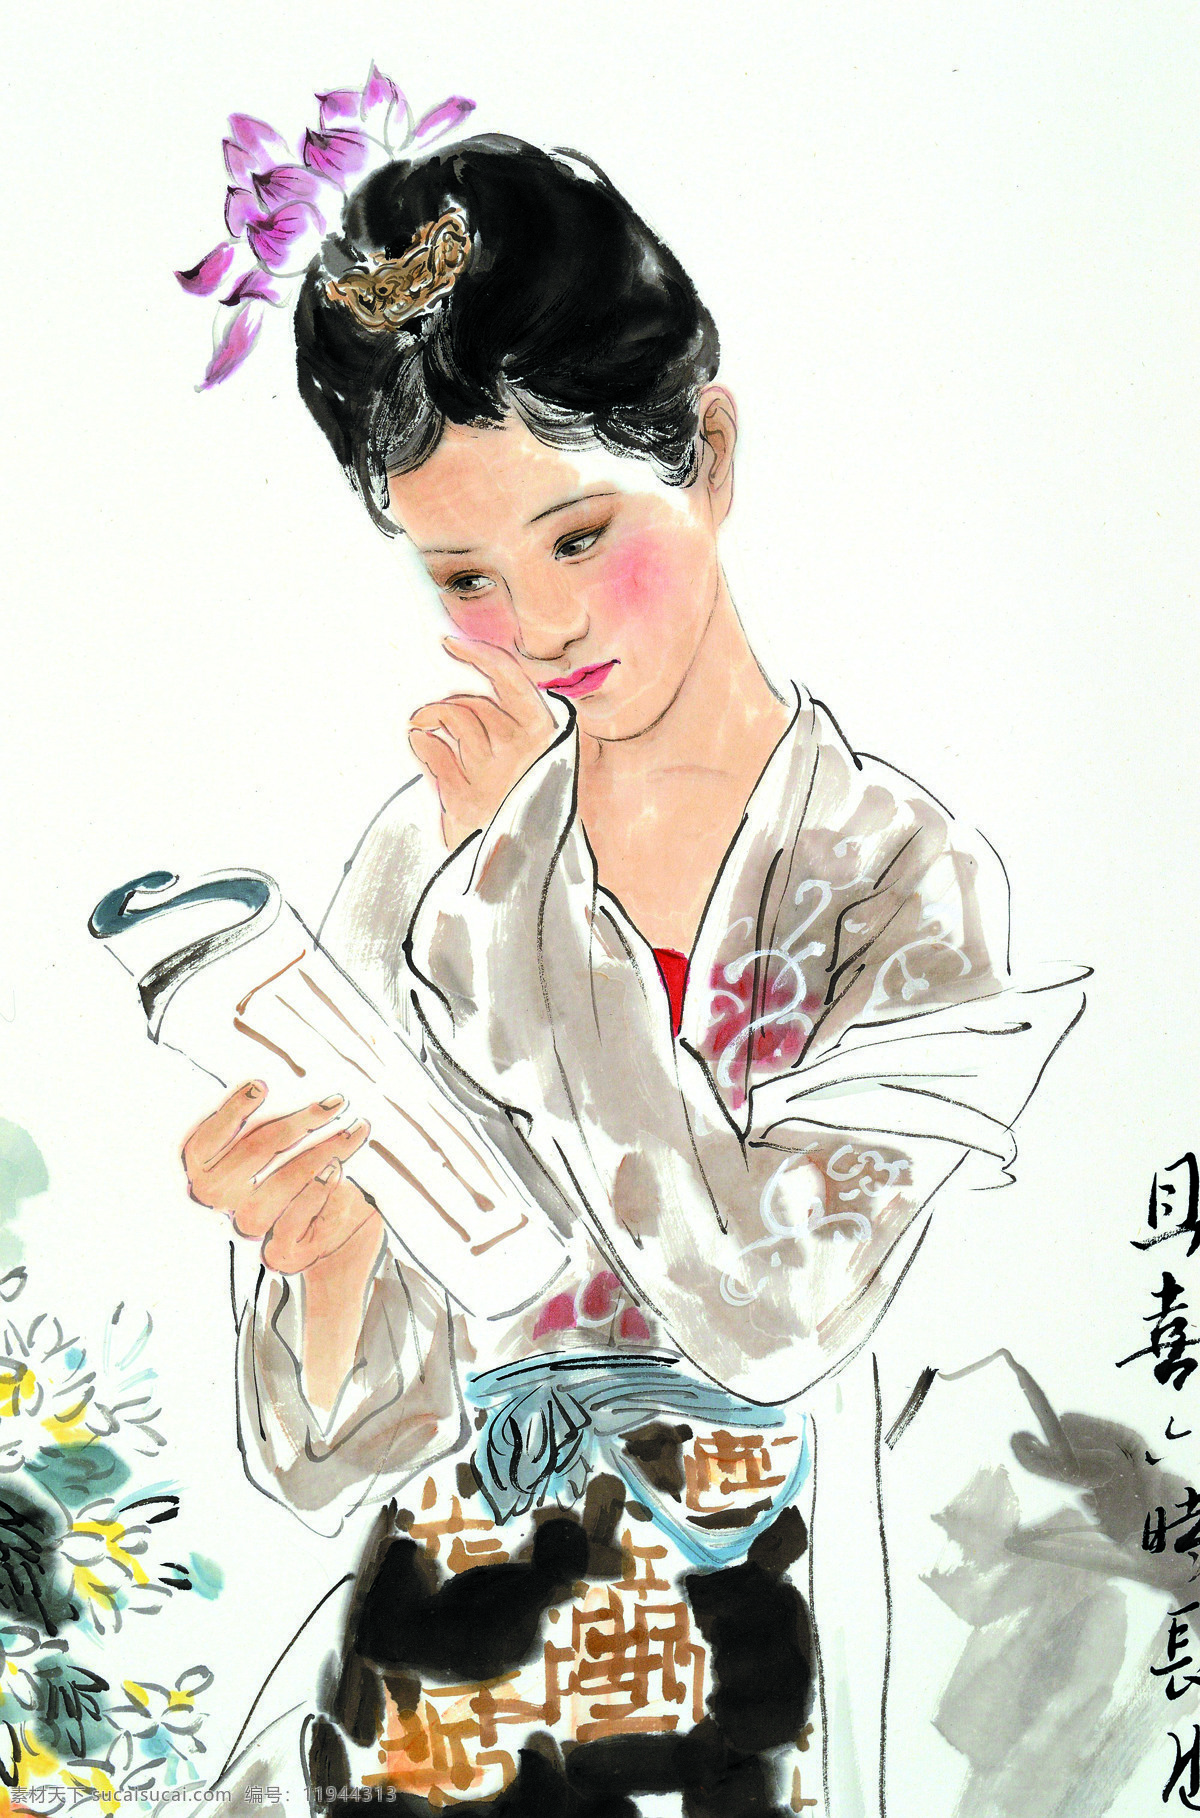 古代仕女图 美术 中国画 人物画 女人 古代仕女 女子 丽人 看书 国画仕女 国画集125 文化艺术 绘画书法